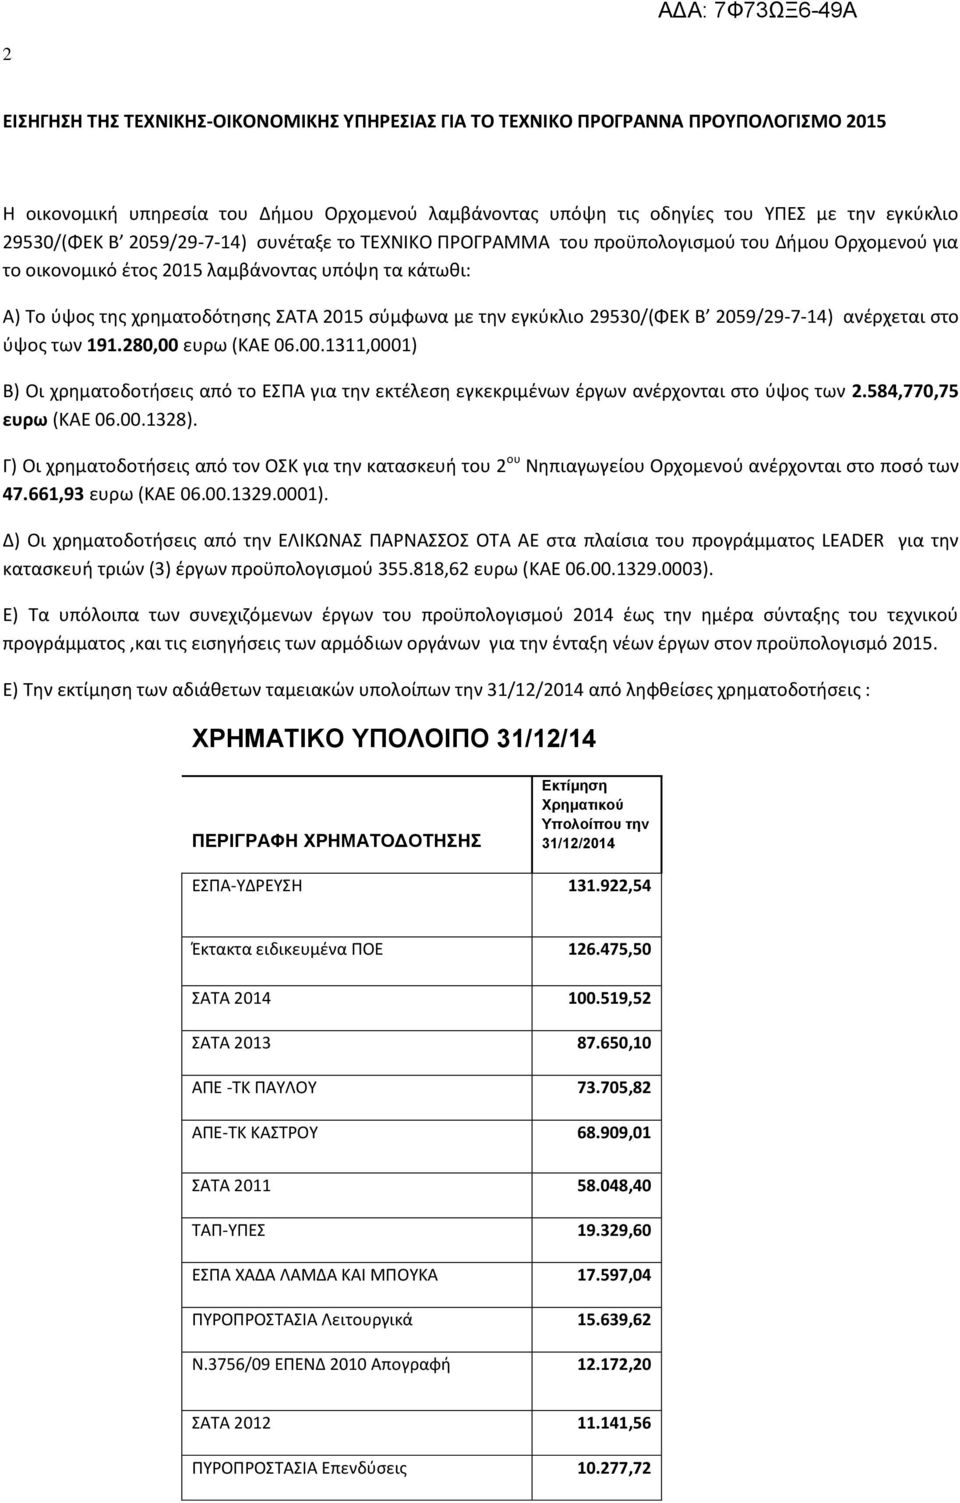 29530/(ΦΕΚ Β 2059/29-7-14) ανέρχεται στο ύψος των 191.280,00 ευρω (ΚΑΕ 06.00.1311,0001) Β) Οι χρηματοδοτήσεις από το ΕΣΠΑ για την εκτέλεση εγκεκριμένων έργων ανέρχονται στο ύψος των 2.